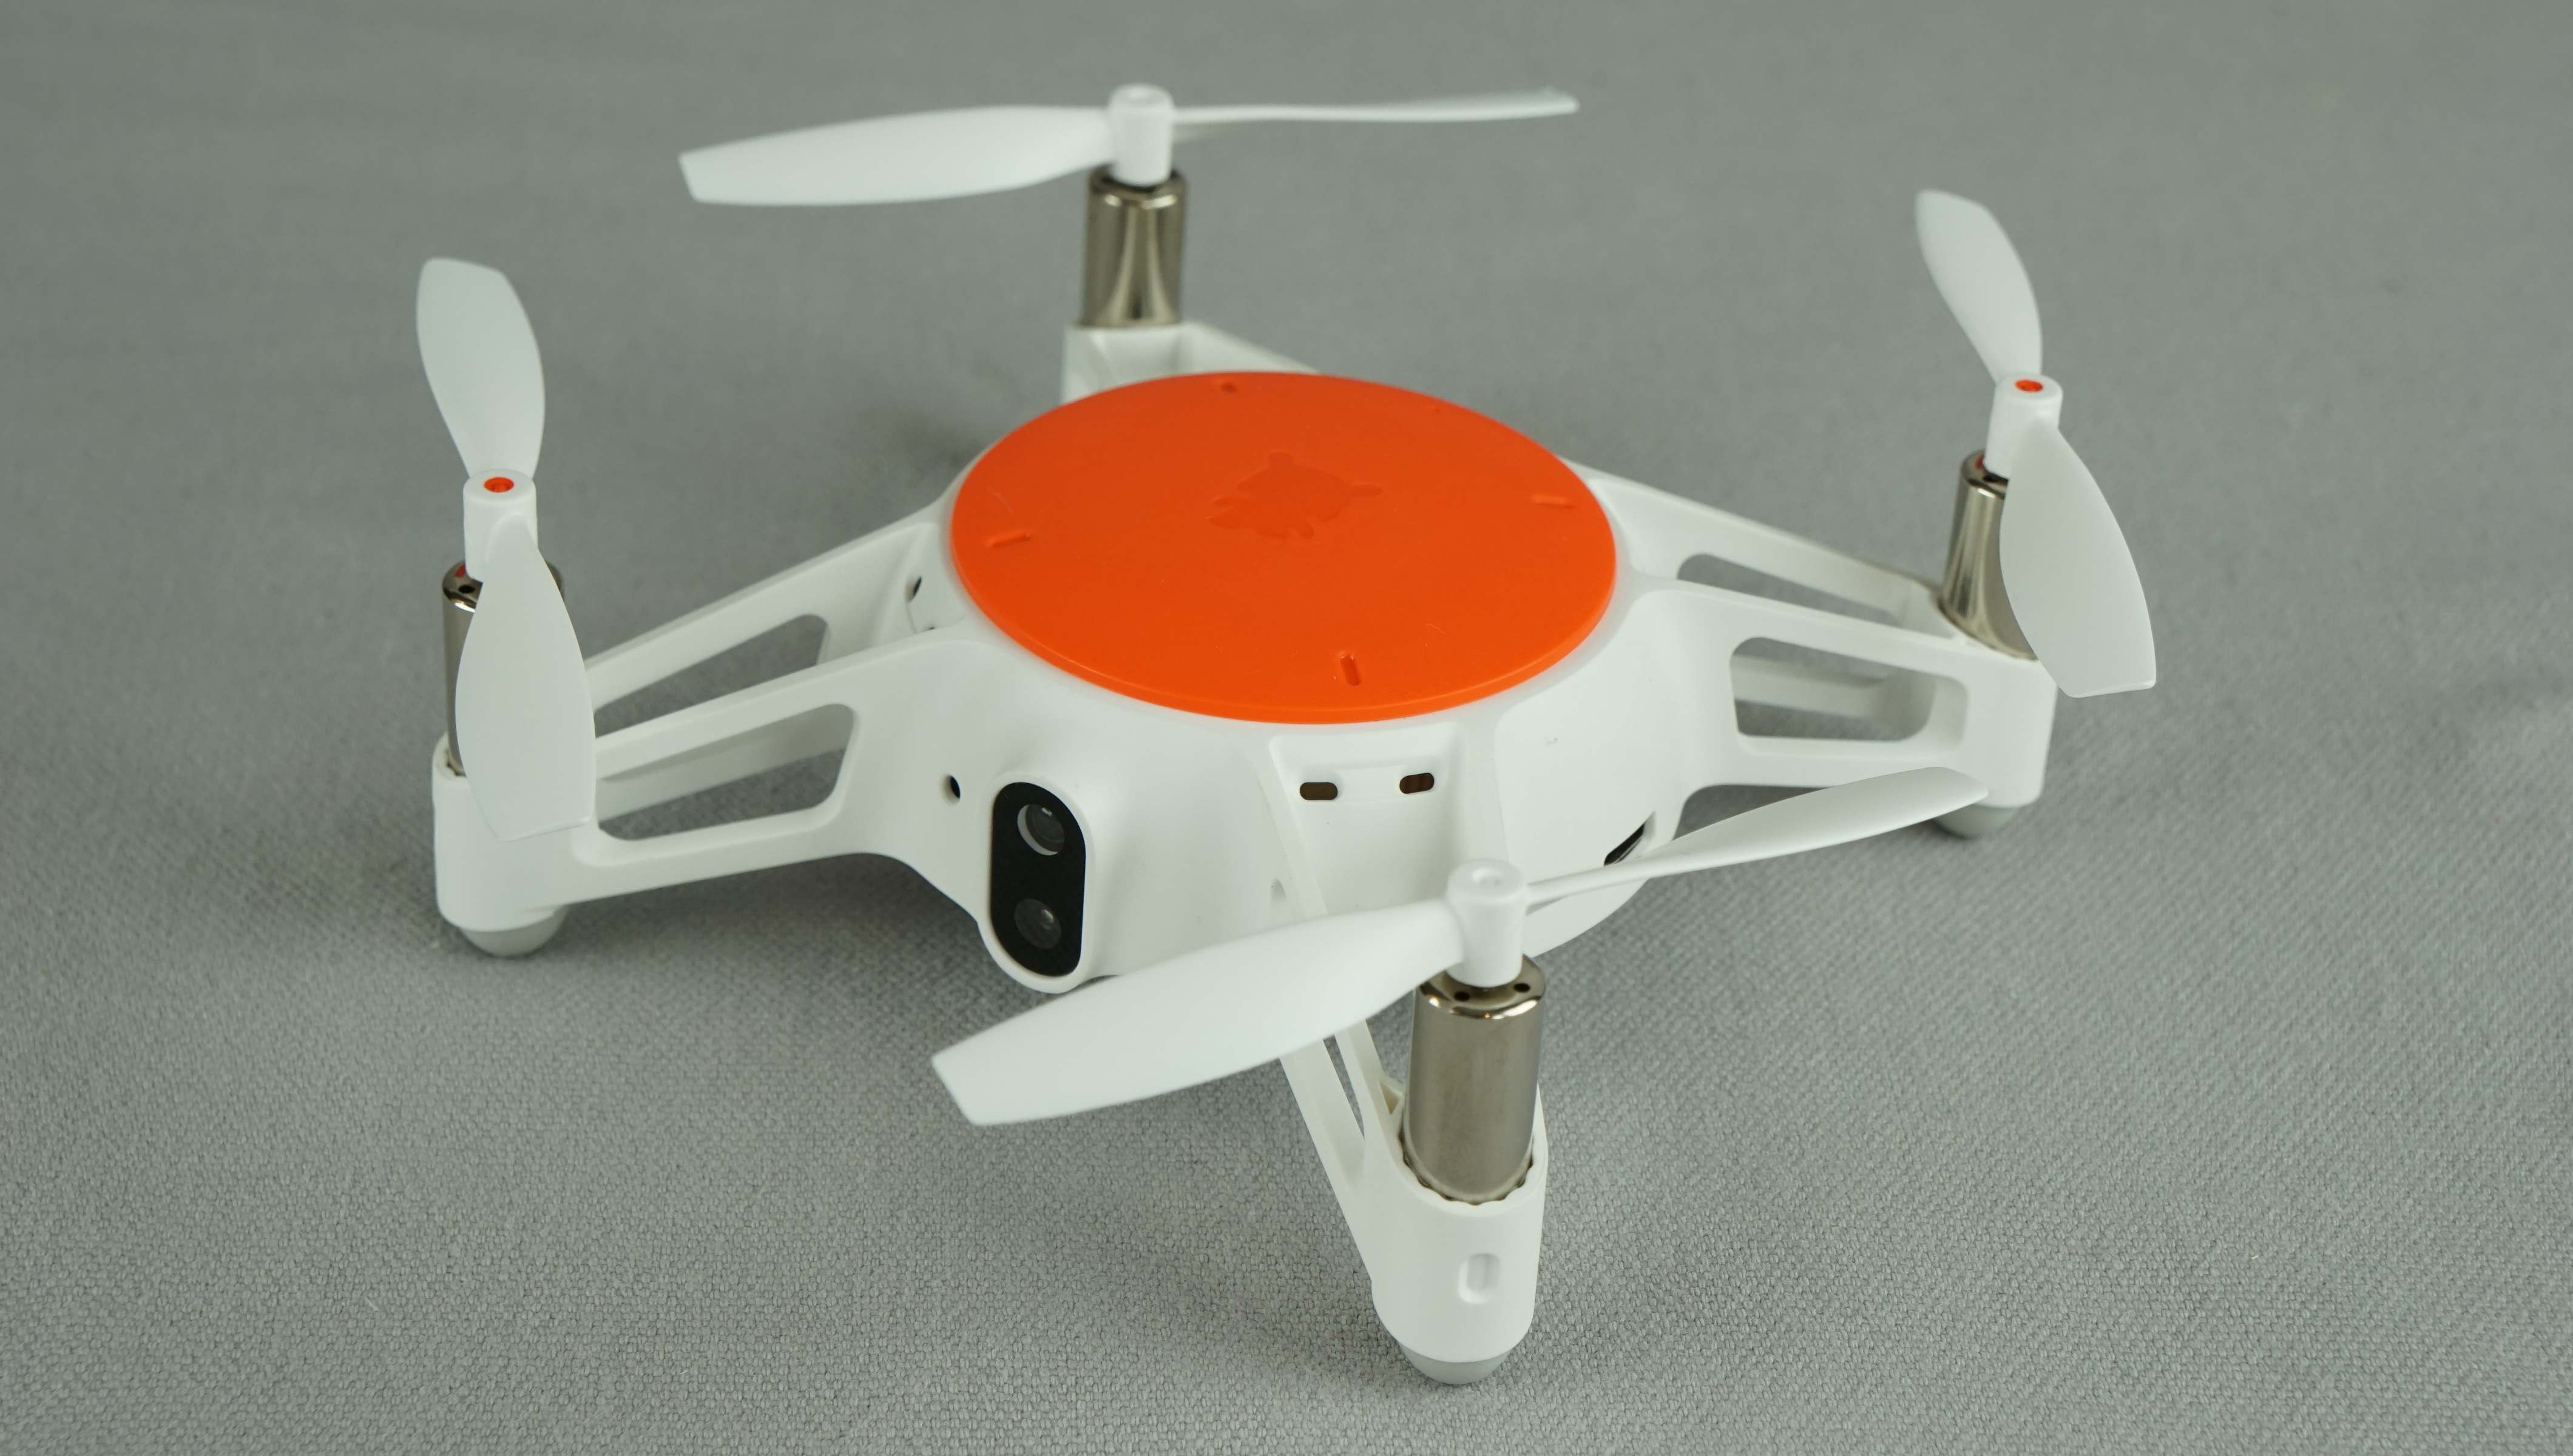 dron xiaomi mi remote control drone mini